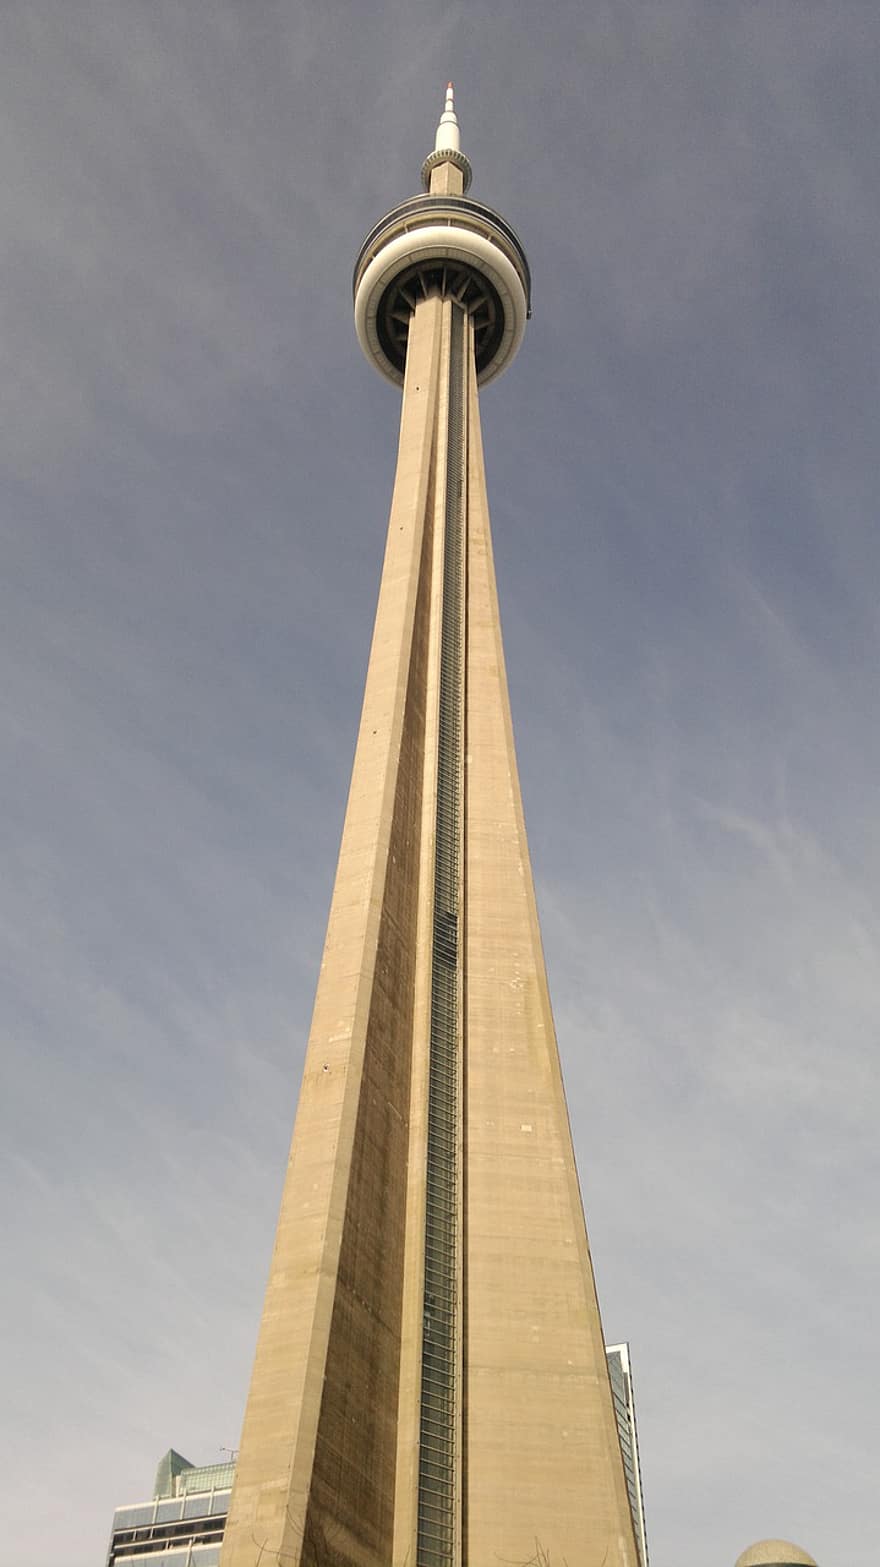 cn tower, башня, архитектура, состав, ориентир, туристическая достопримечательность, Торонто, Онтарио